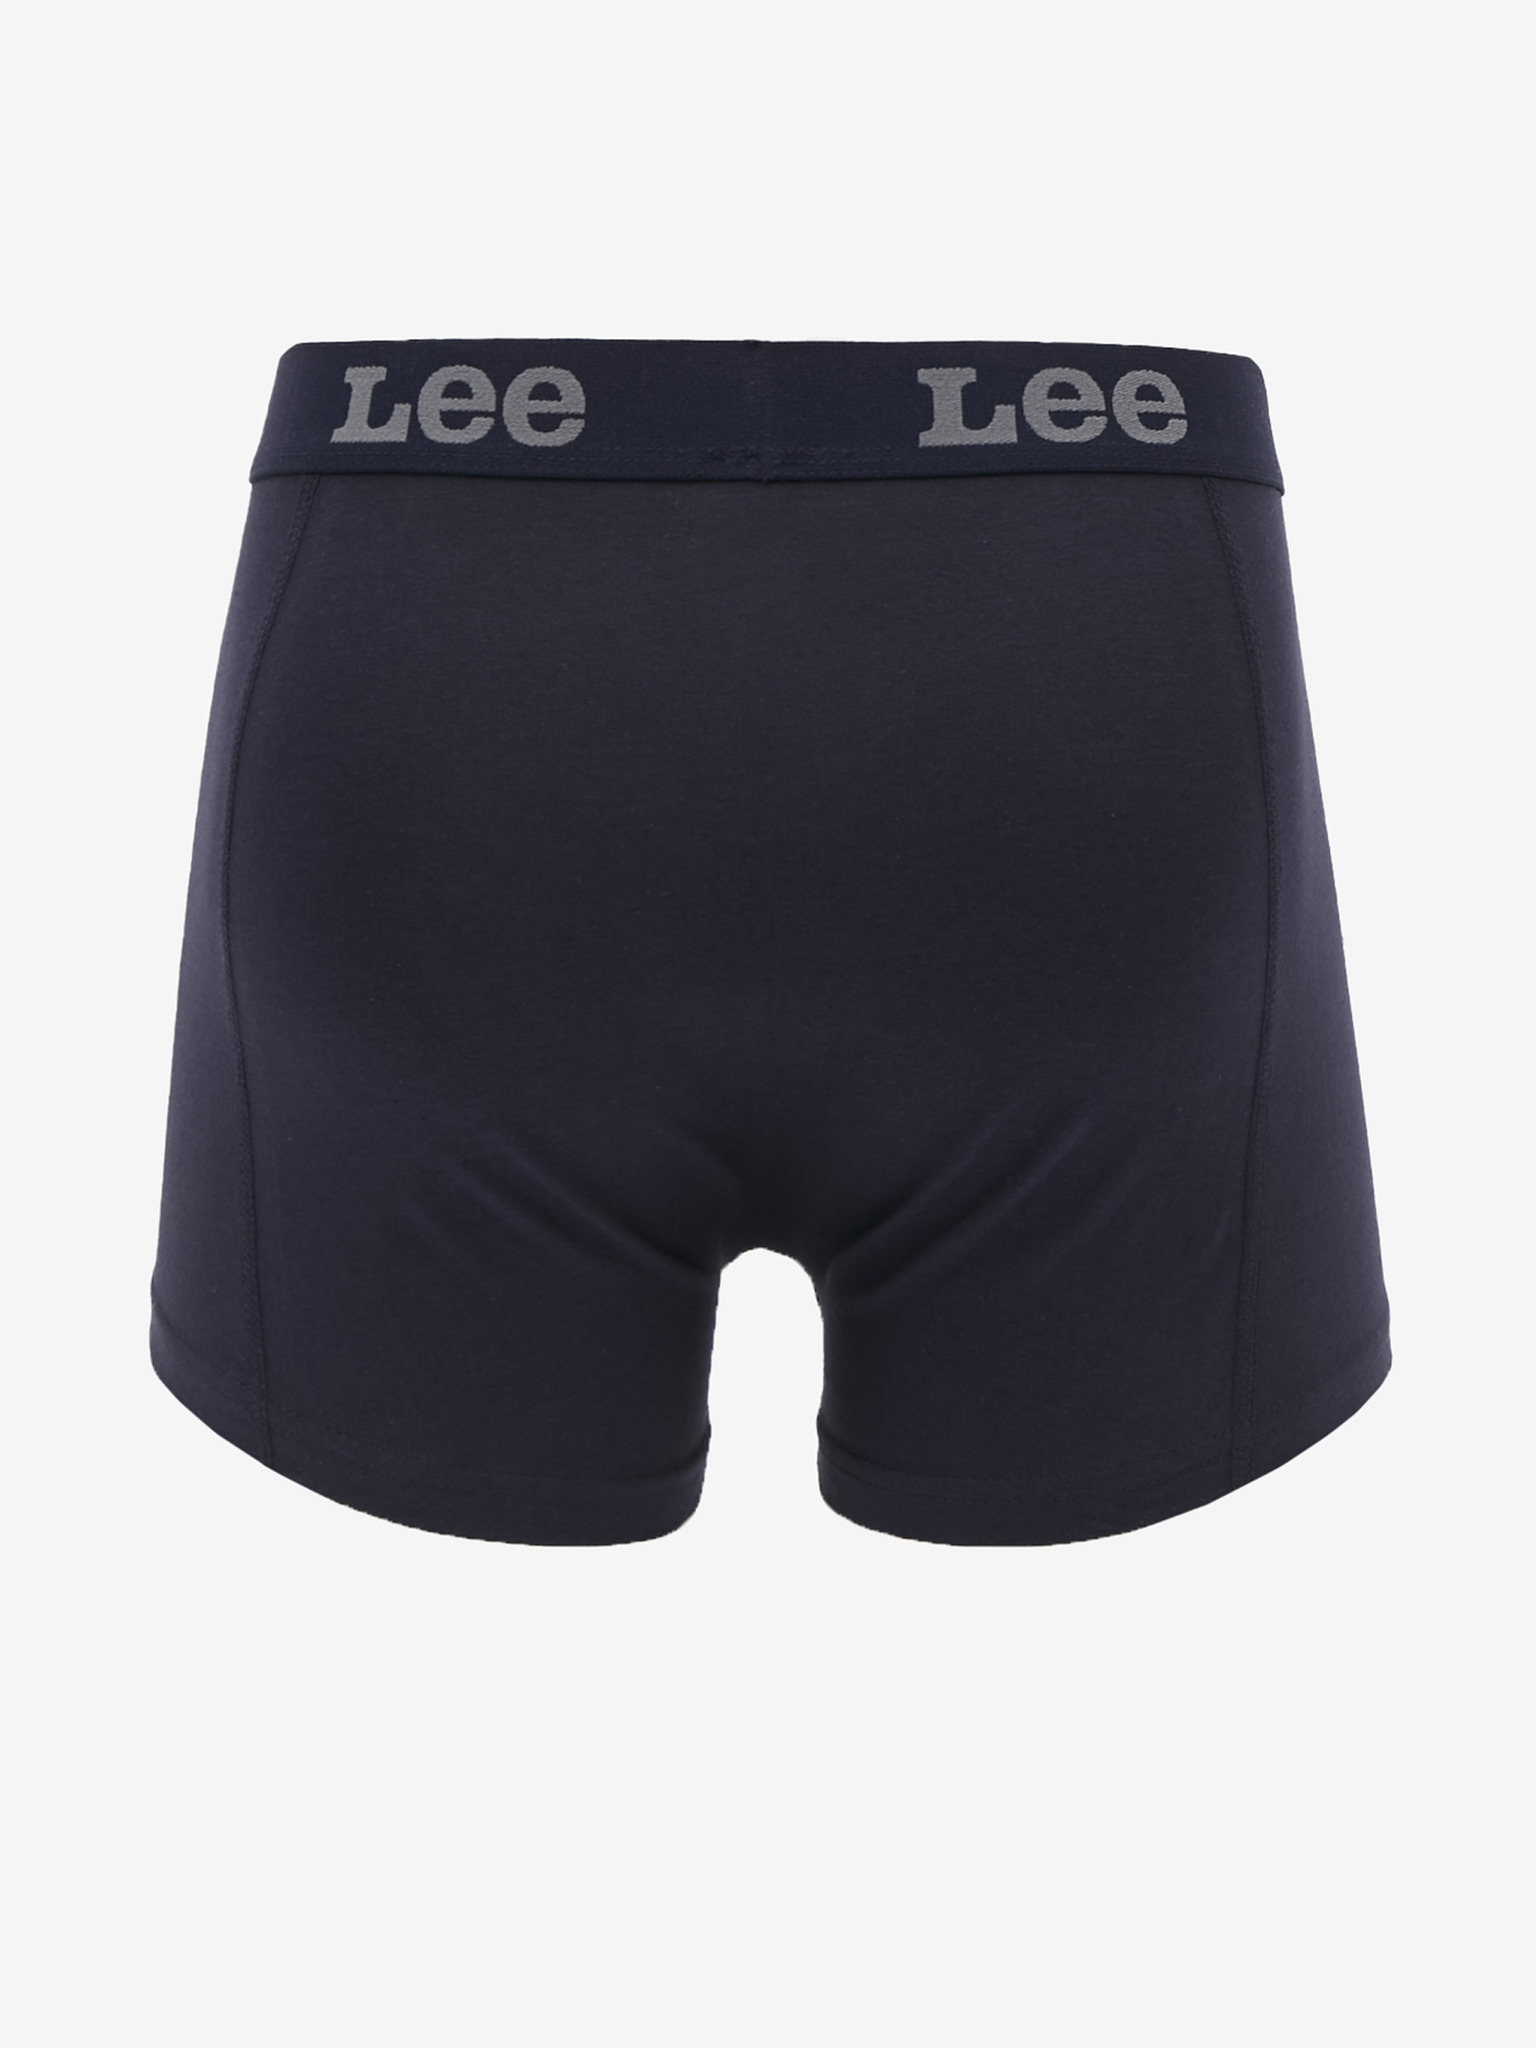 Lee - Boxers 2 pcs